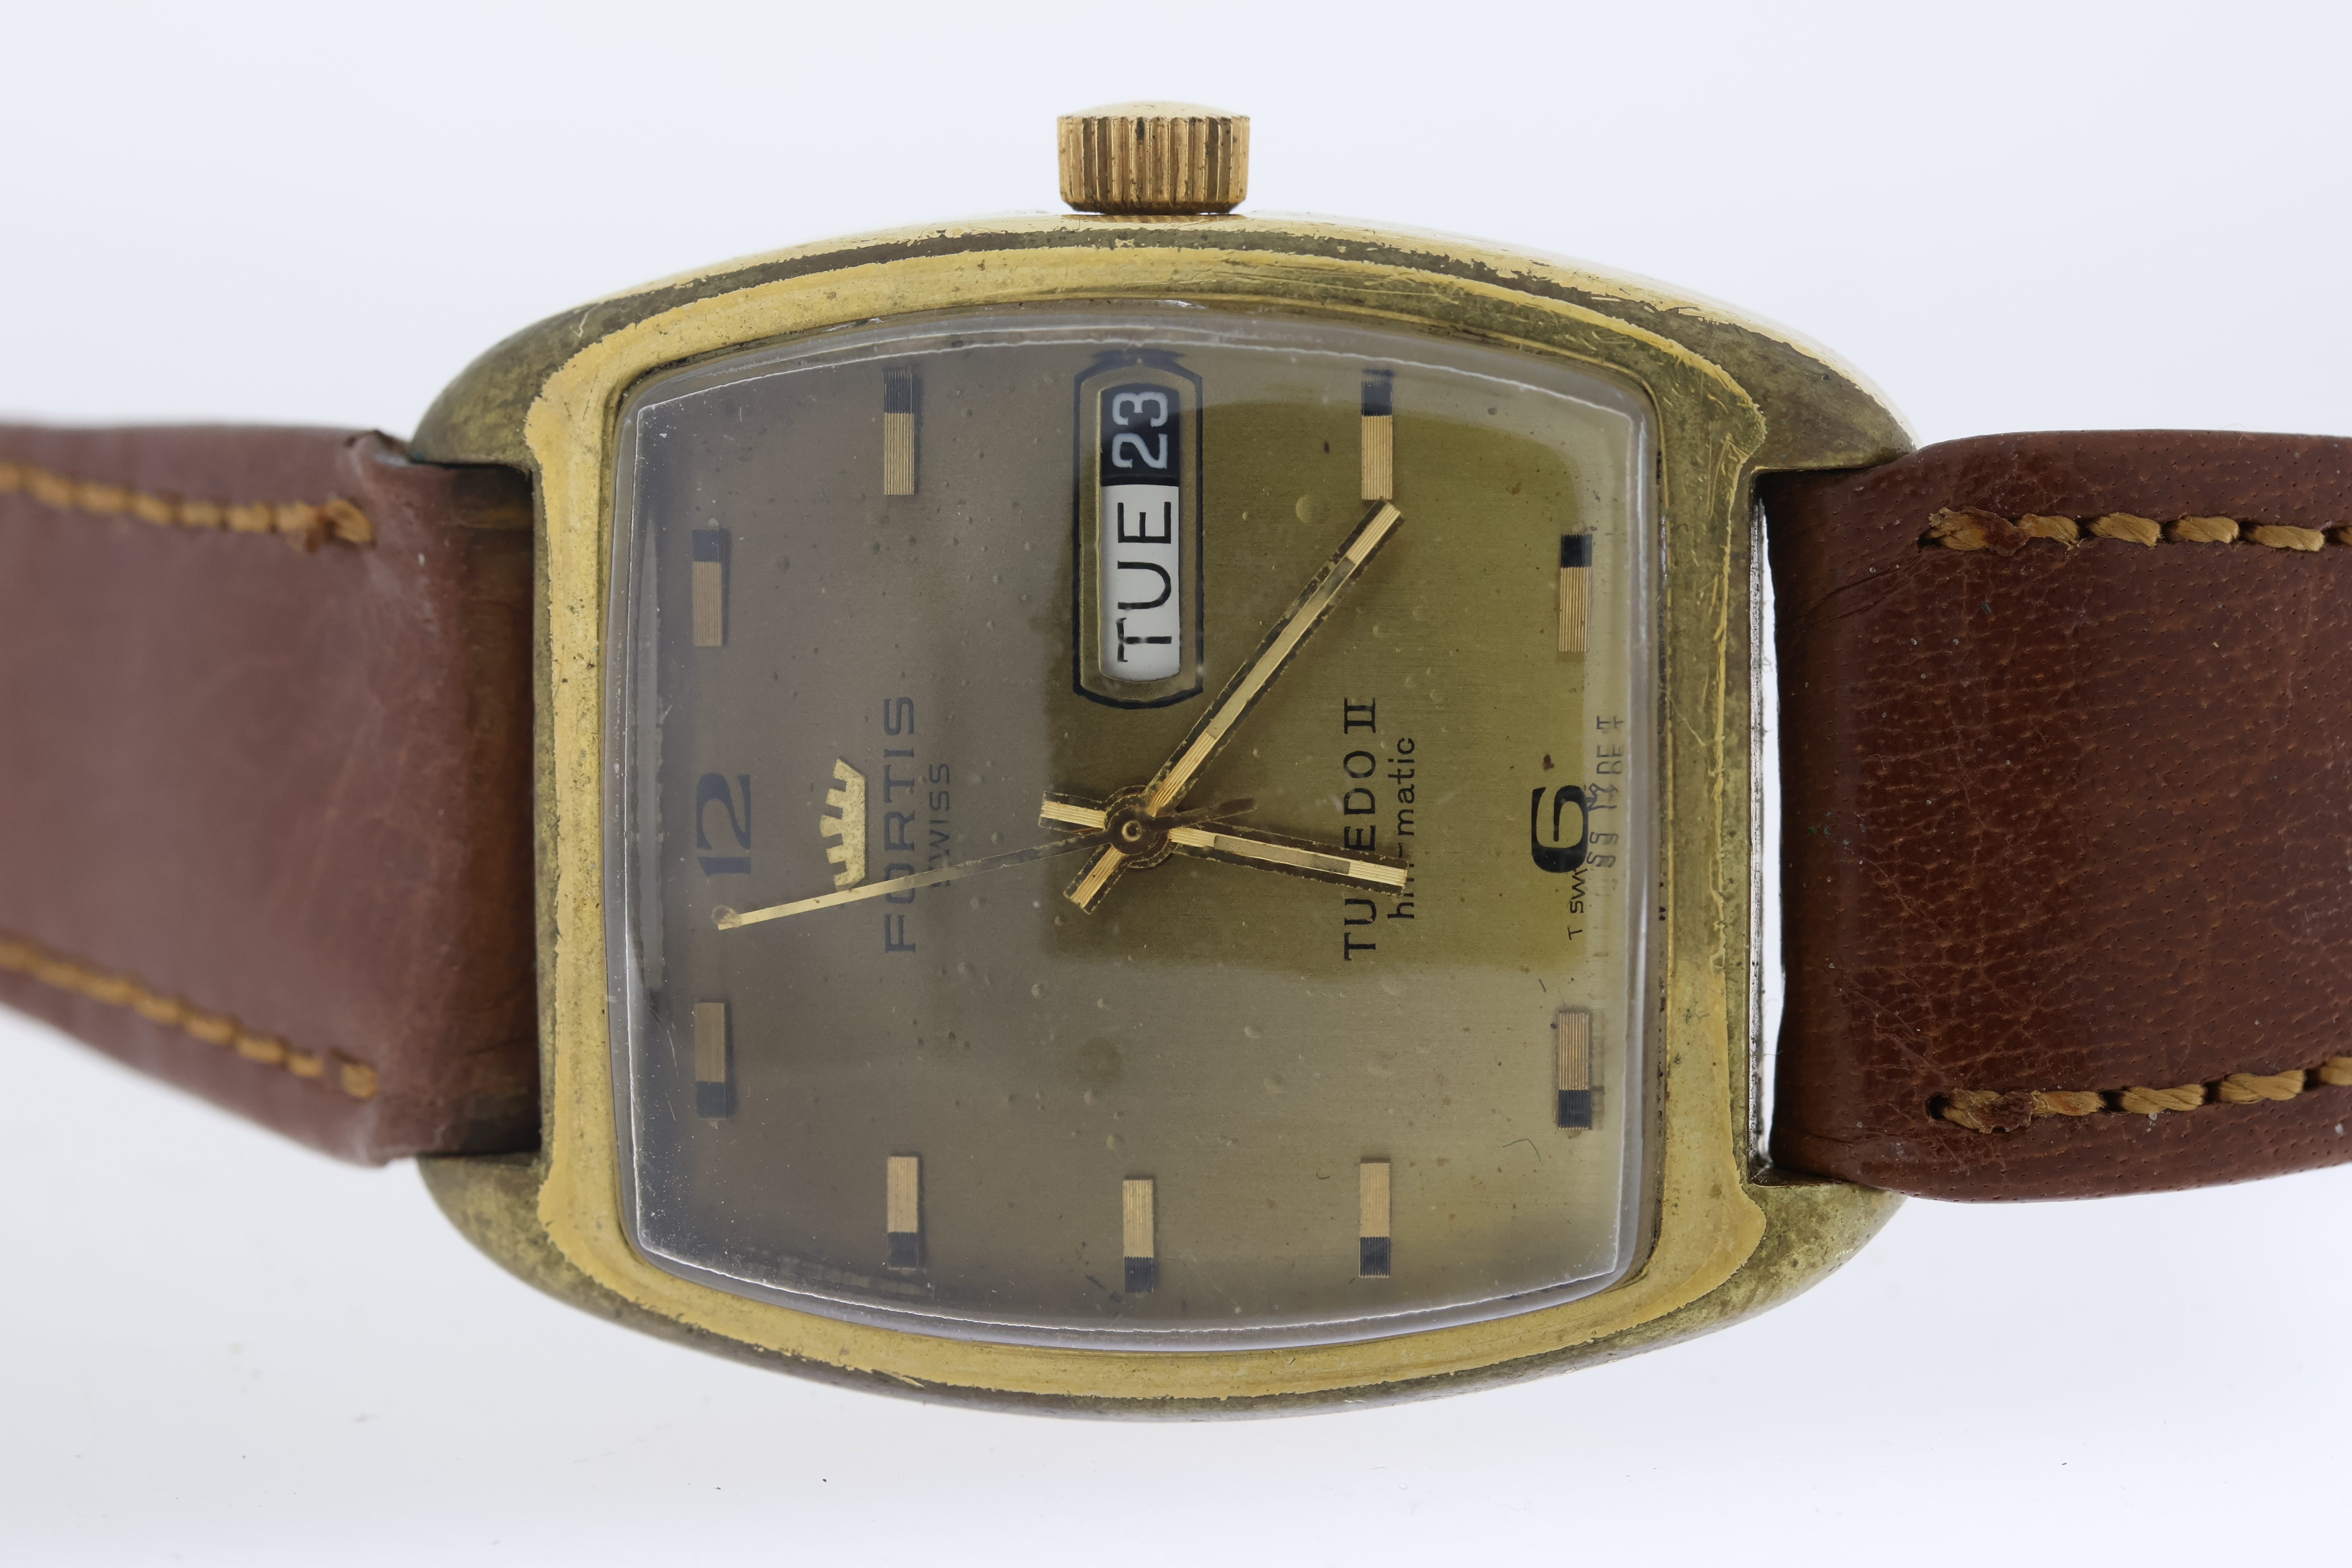 Job lot of 5 wristwatches. Including a Seiko sportmatic automatic, Seiko quartz chronograph, - Image 6 of 6